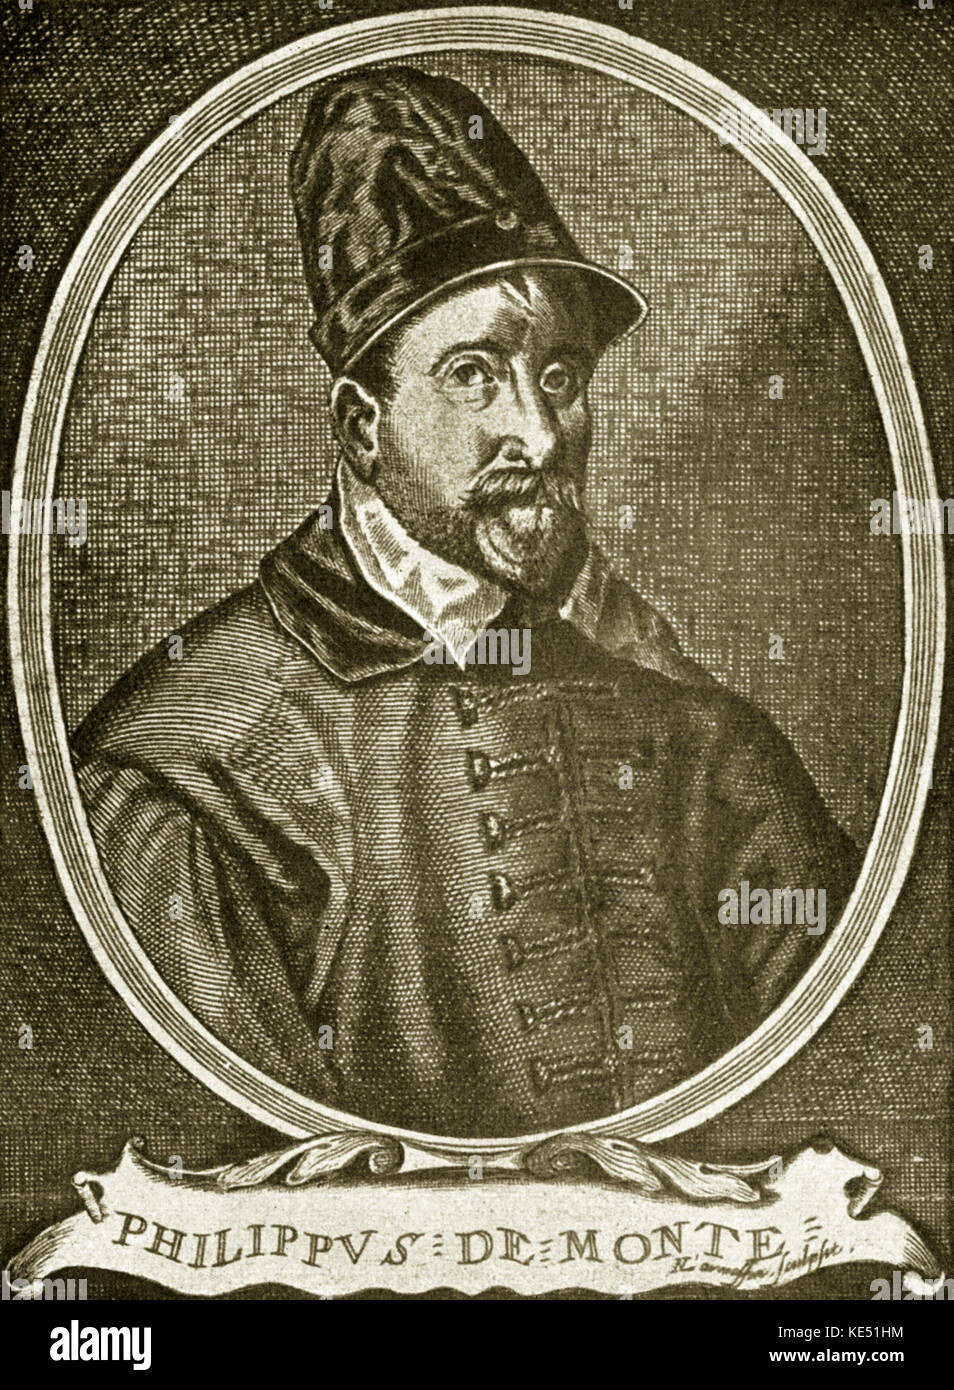 Philipp de Monte - ritratto del compositore fiammingo. PdM: 1521 - 4 luglio 1603. Philippus de Monte. Foto Stock